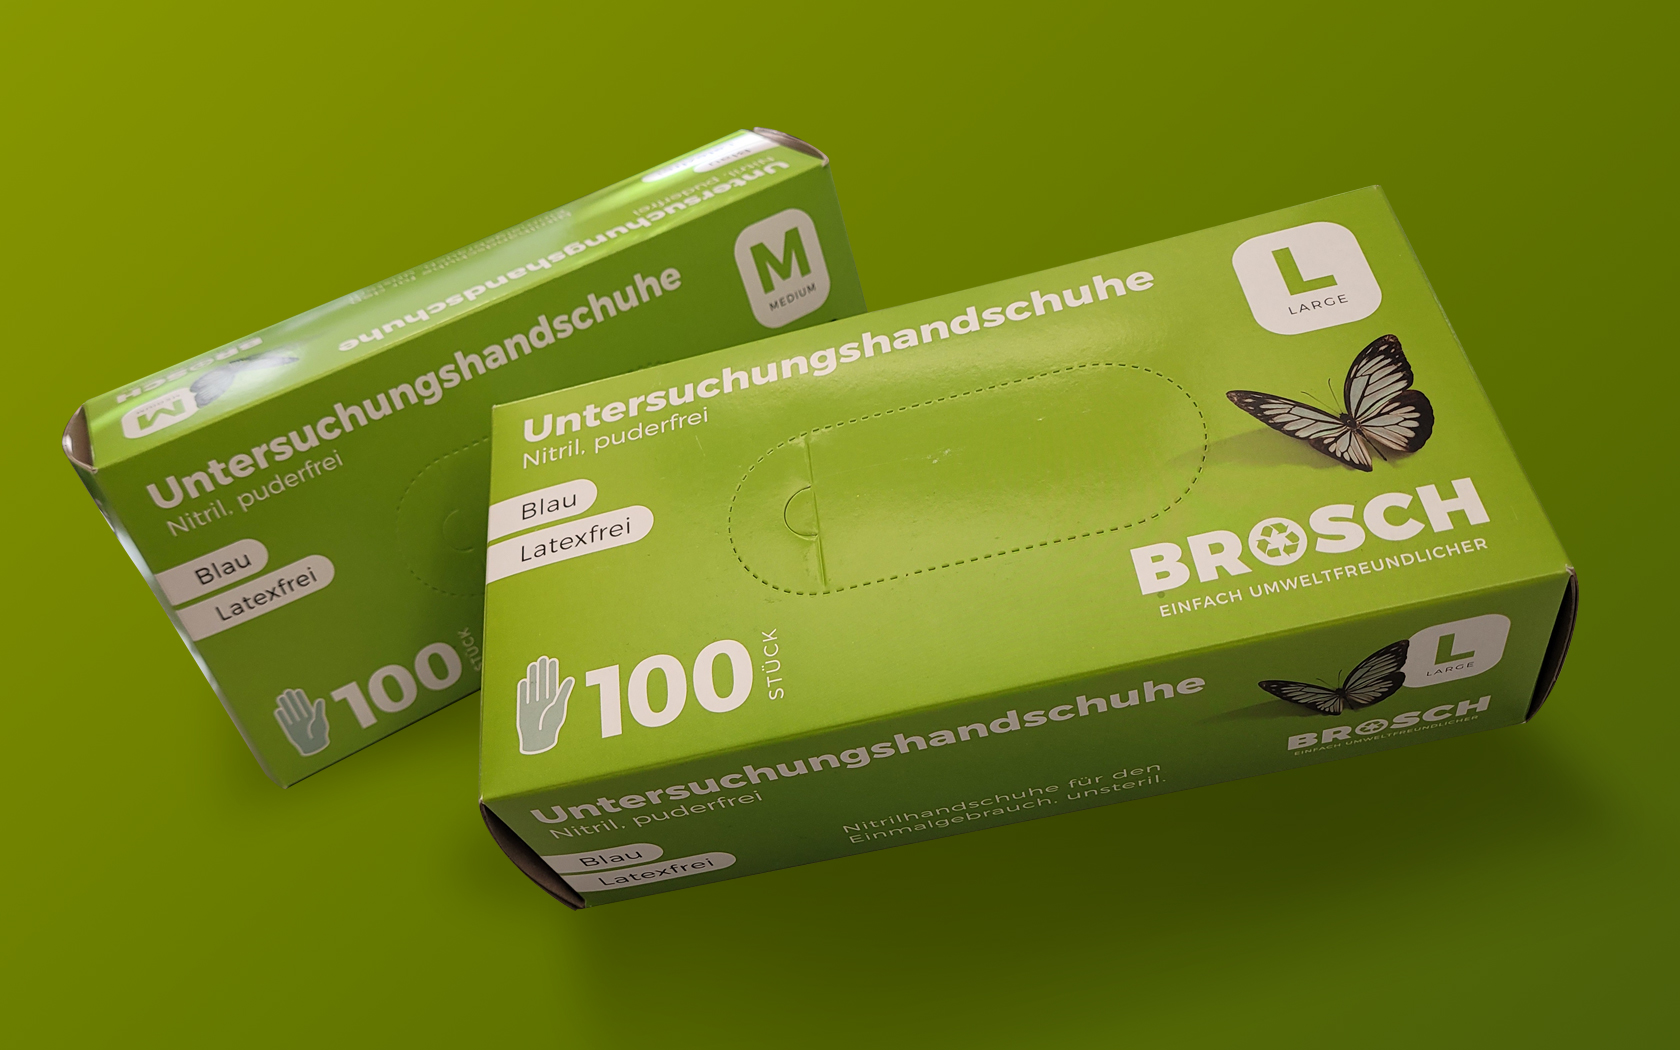 Resch & Partner Werbeagentur Rems-Murr-Kreis, Projekt: Brosch Produktverpackung – Packaging